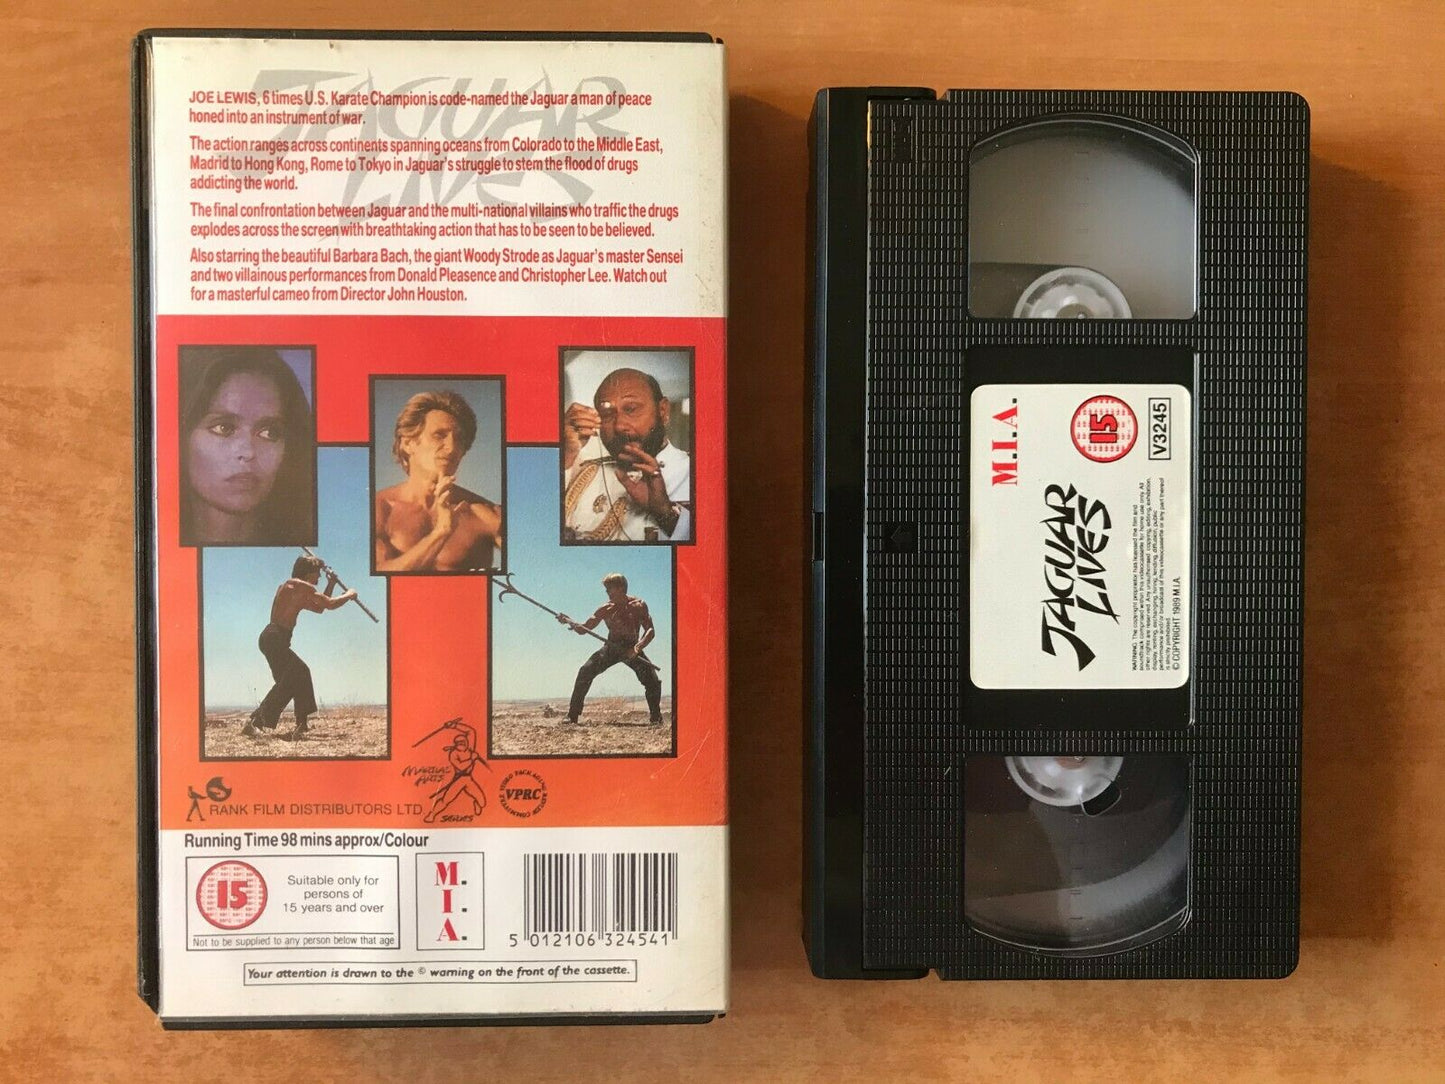 Jaguar Lives: Martial Arts Action - Drug Ring Bust Up - Christopher Lee - VHS-